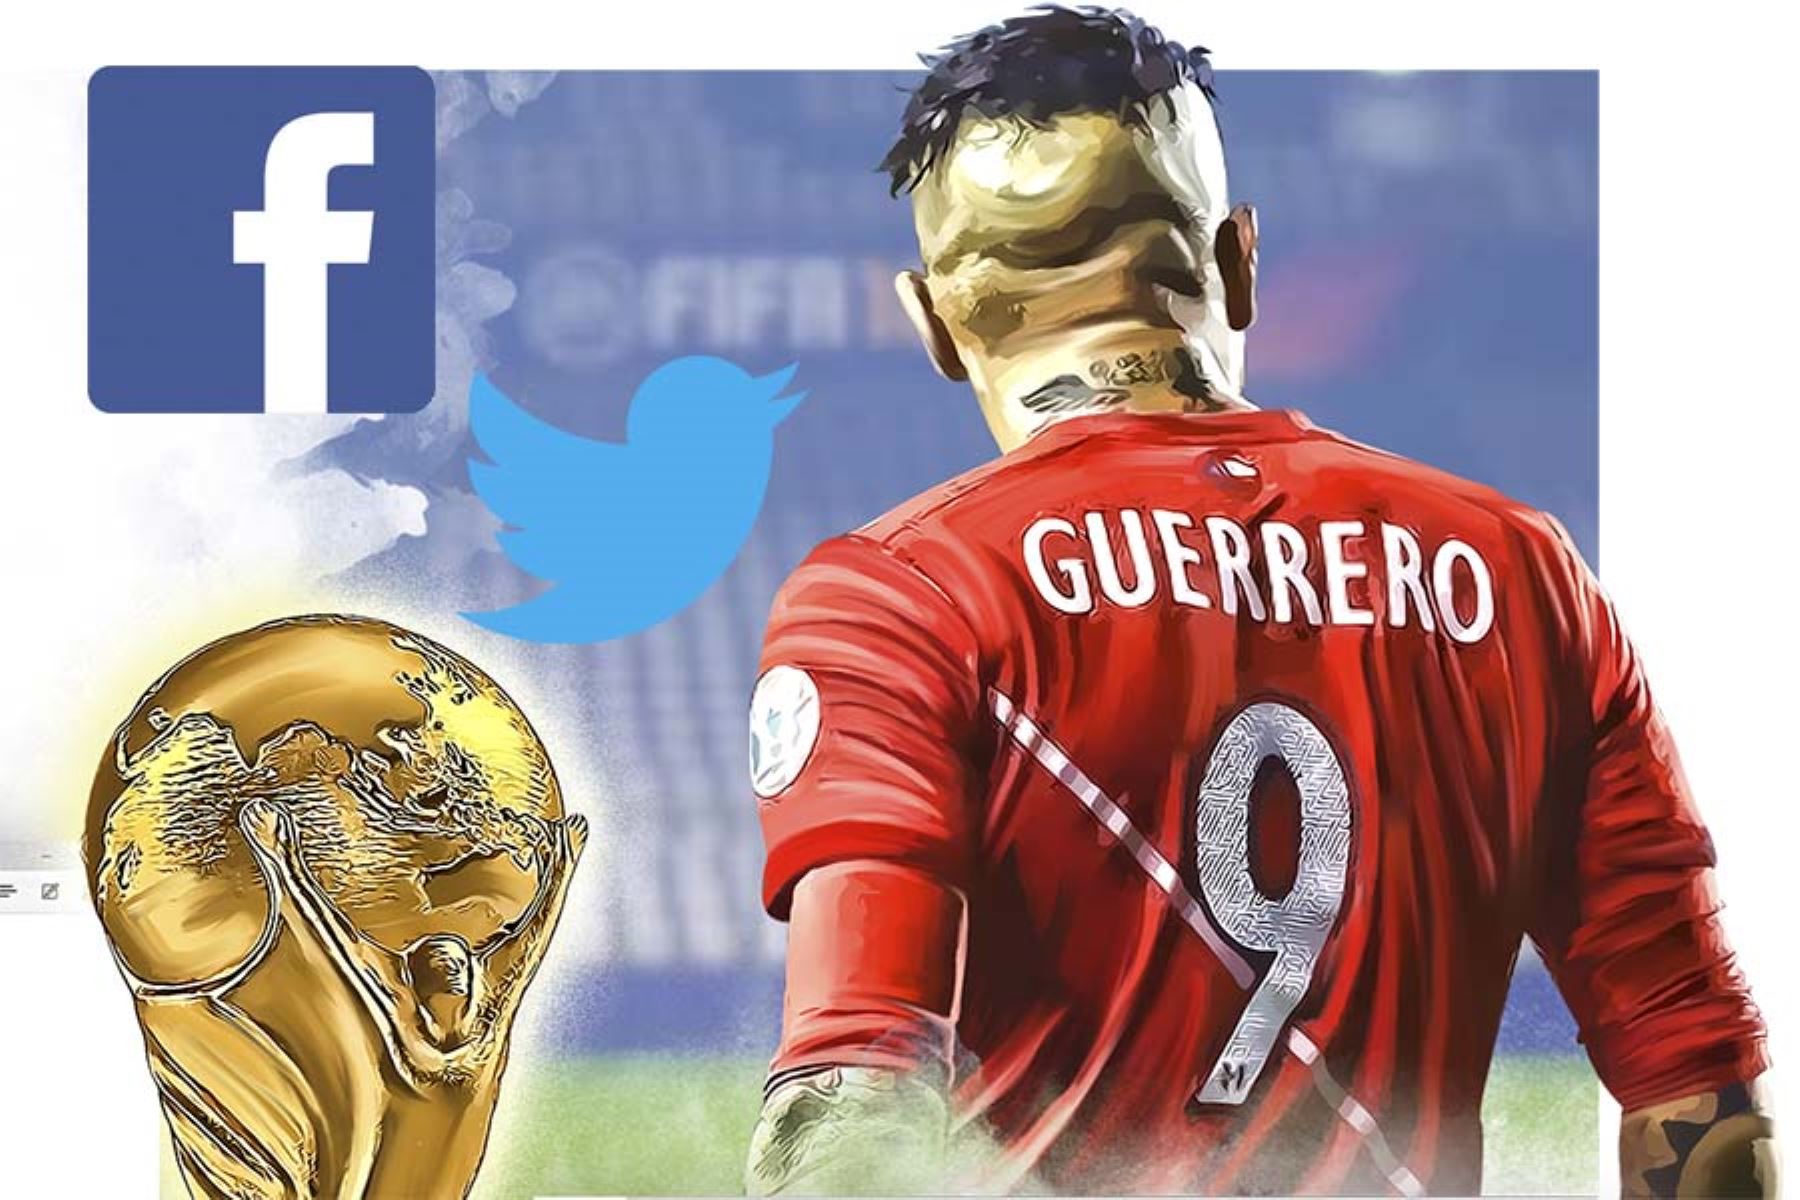 Paolo Guerrero fue el tema más comentado en Facebook, Instagram y Twitter en el Perú entre marzo y la quincena de mayo del 2018, según un informe de comScore.